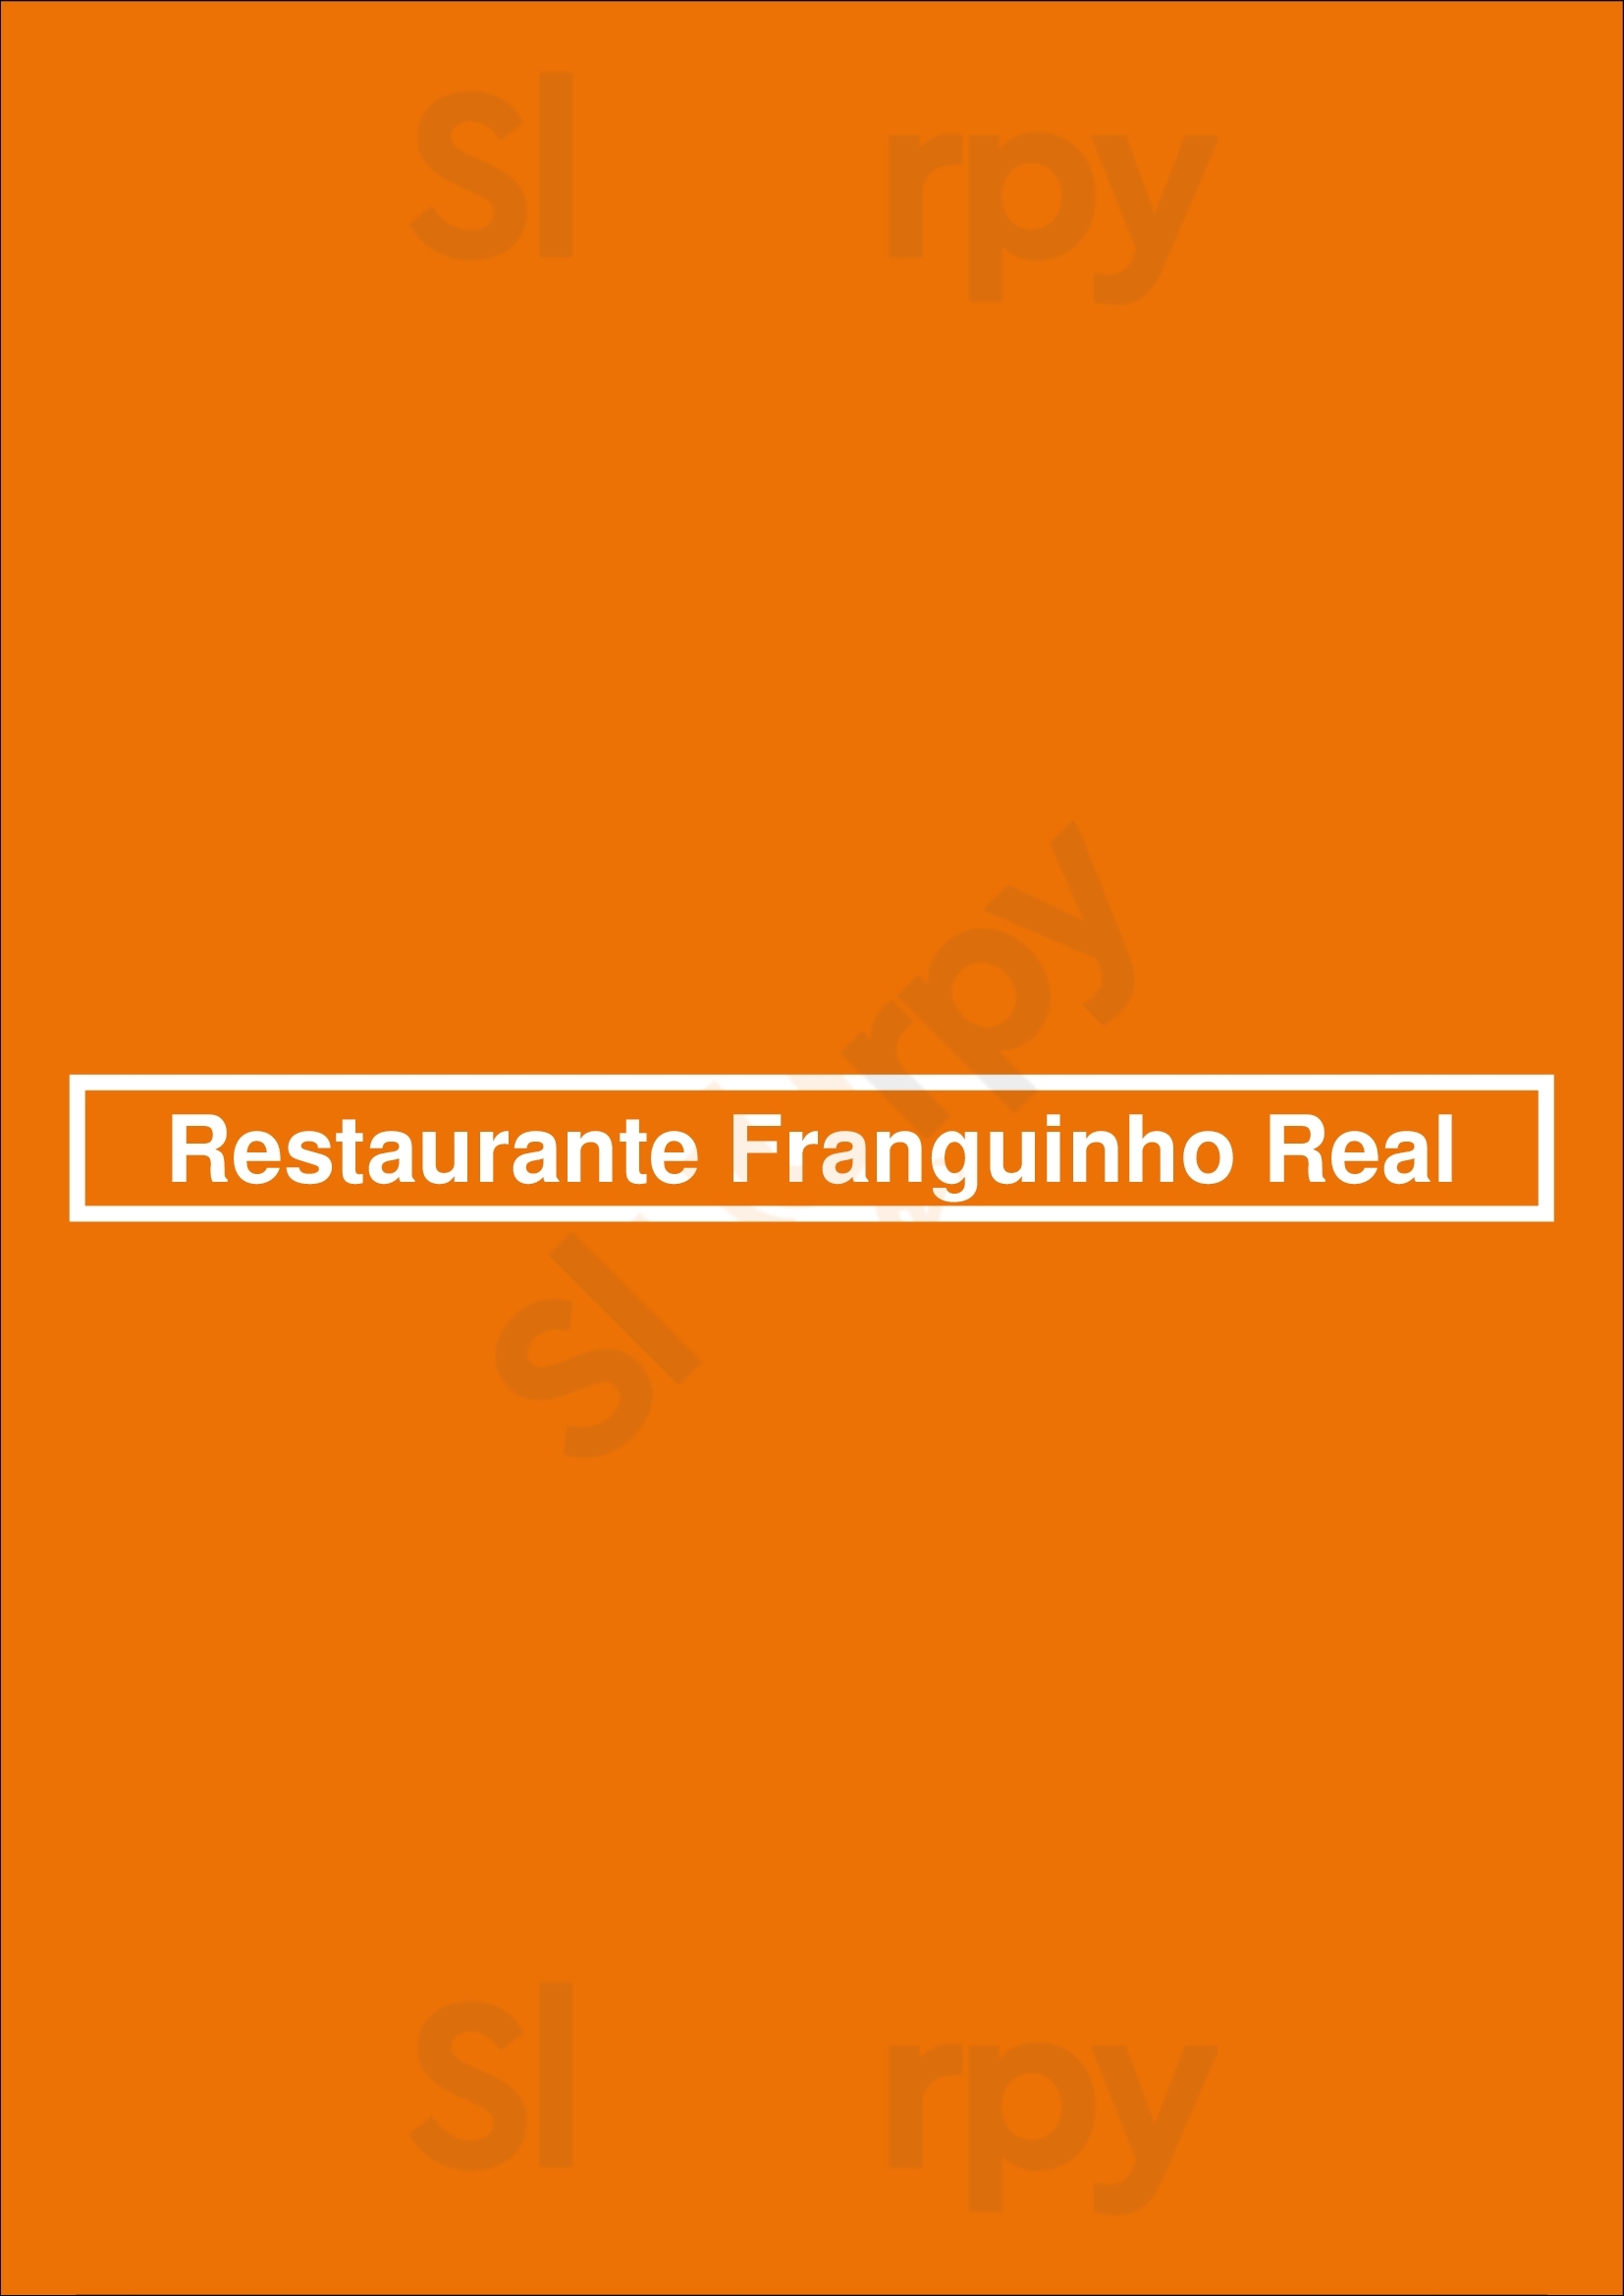 Restaurante Franguinho Real Lisboa Menu - 1